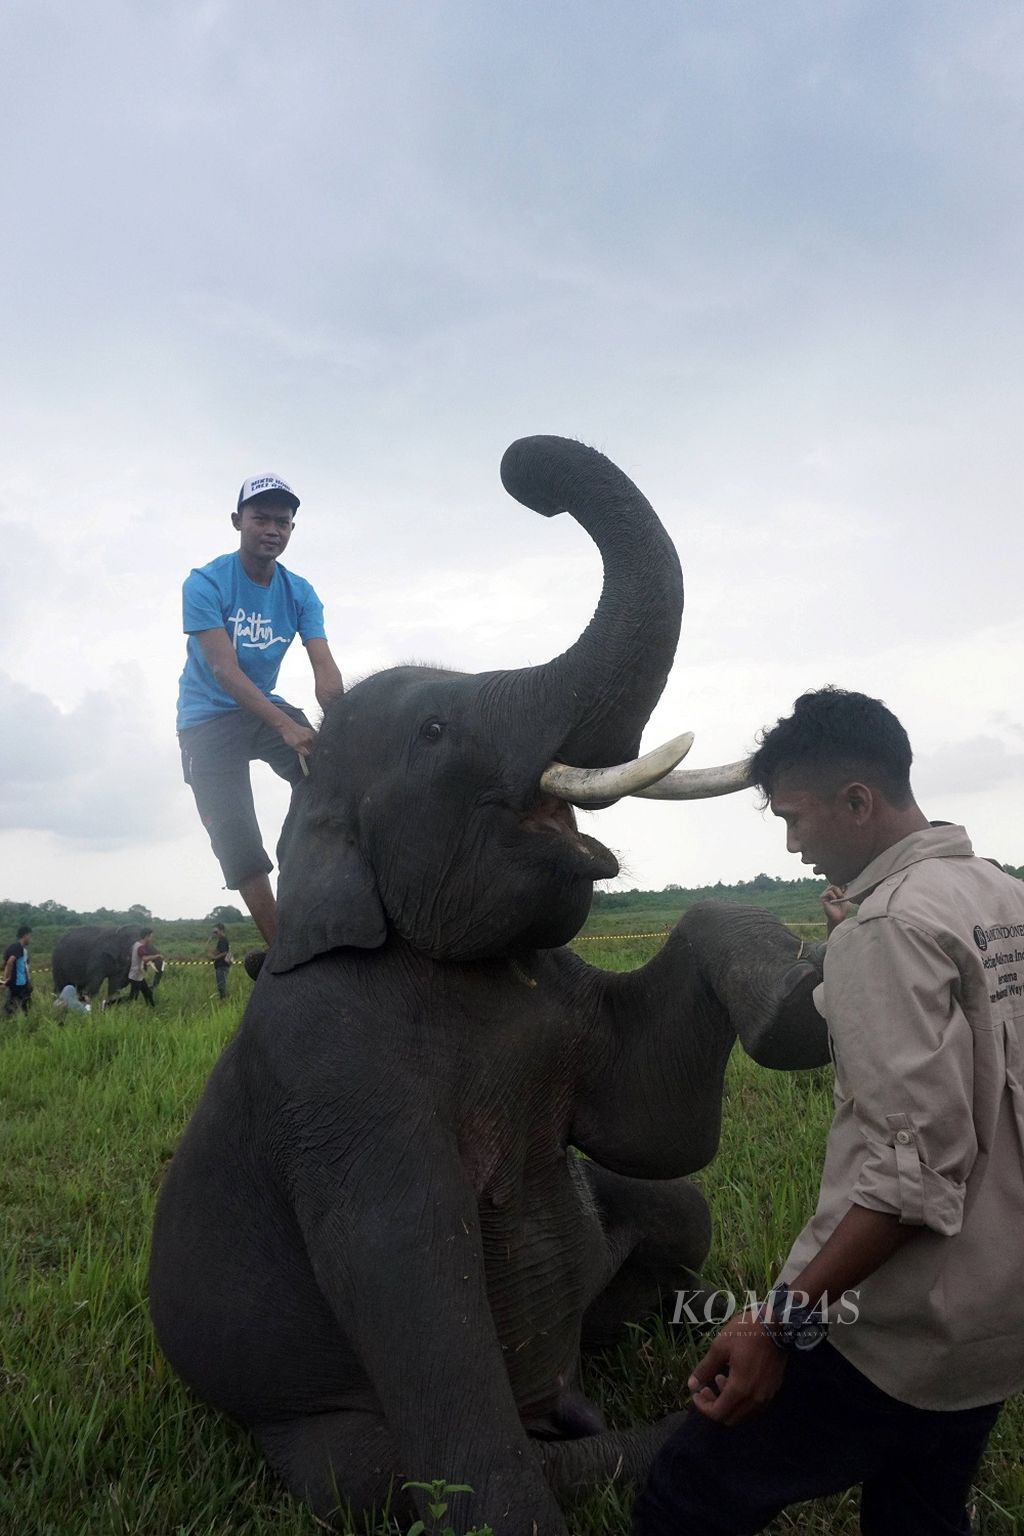 Seekor gajah jinak menunjukkan atraksi di depan pengunjung di dalam Kawasan Taman Nasional Way Kambas, Kabupaten Lampung Timur, Provinsi Lampung, Sabtu (11/11/2017). Sepanjang Januari hinggga Oktober 2017, jumlah wisatawan domestik dan asing yang berkunjung ke TNWK sebanyak 61.909 orang. Jumlah itu meningkat hampir dua kali lipat dari jumlah kunjungan wisatawan tahun sebelumnya, yakni 35.989 orang.